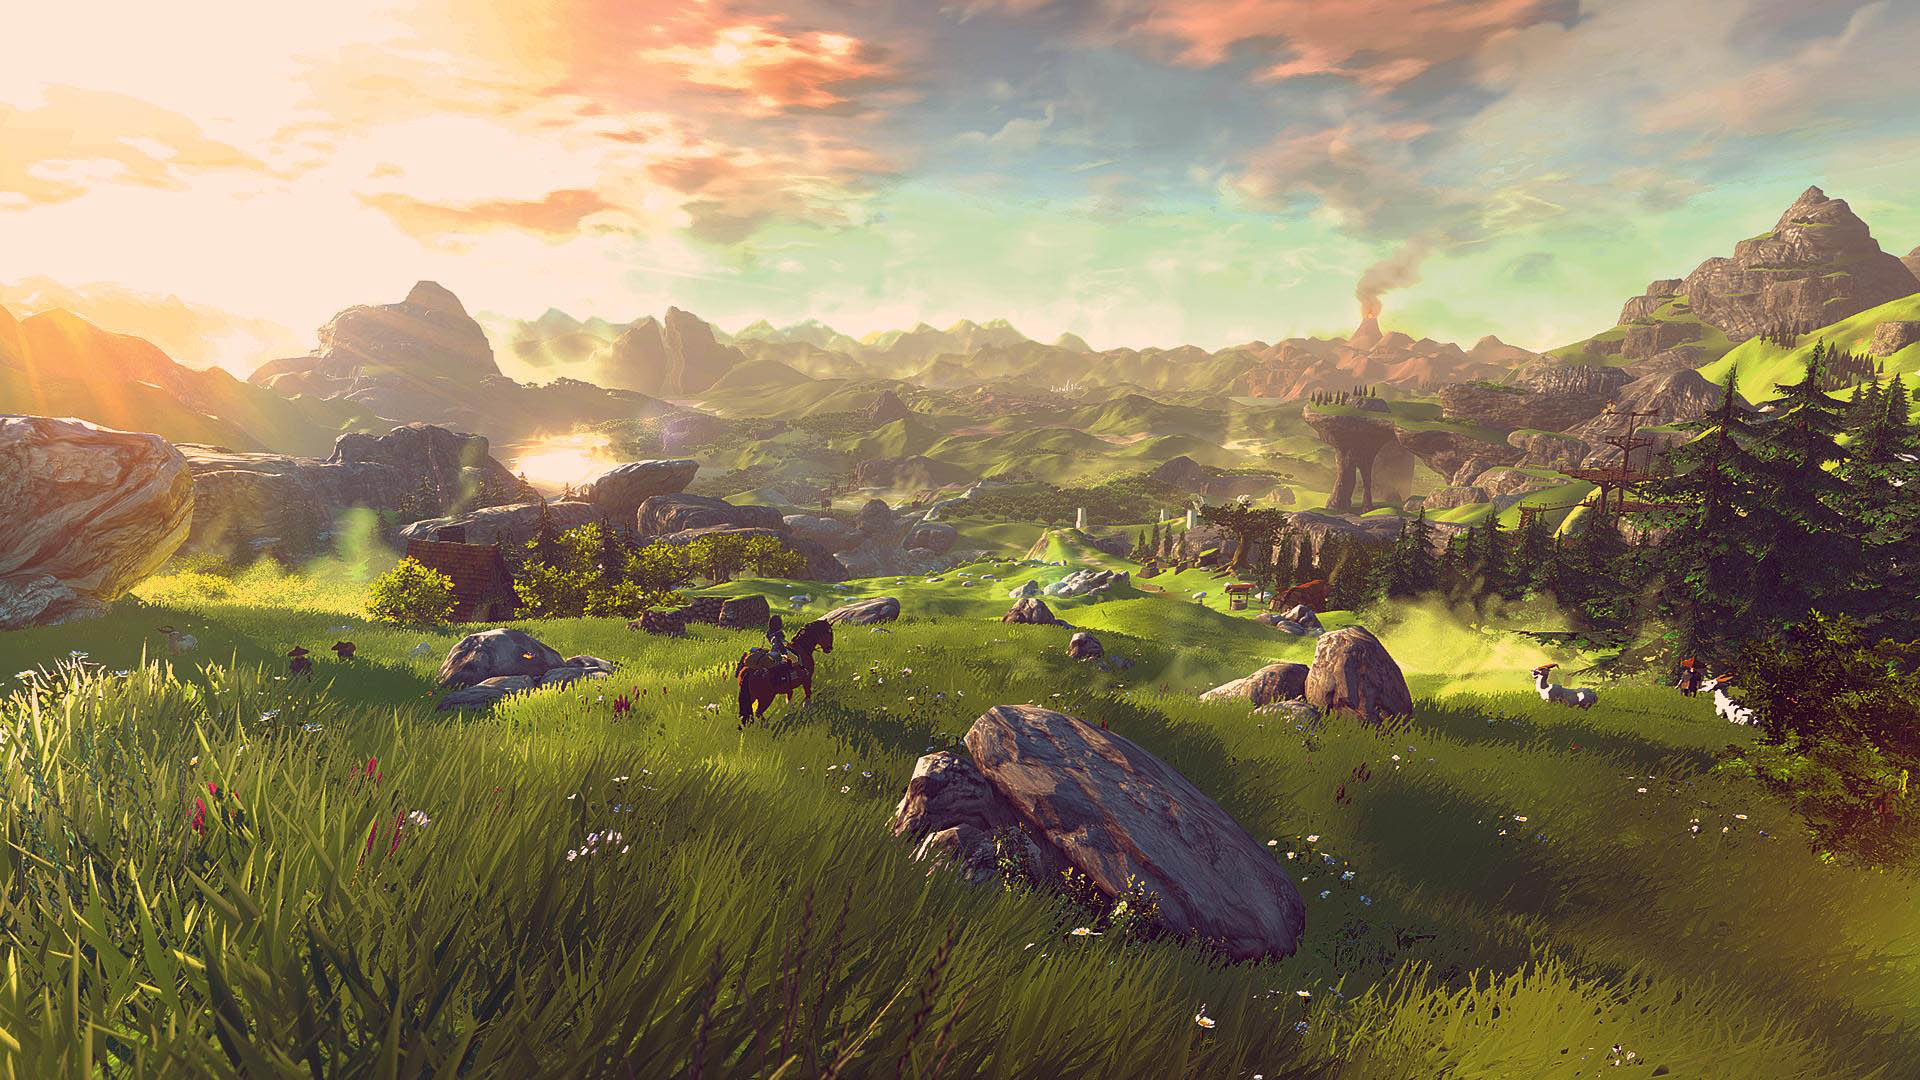 1920x1080 The Legend of Zelda Wii U Landscape at Day Time  wallpaper